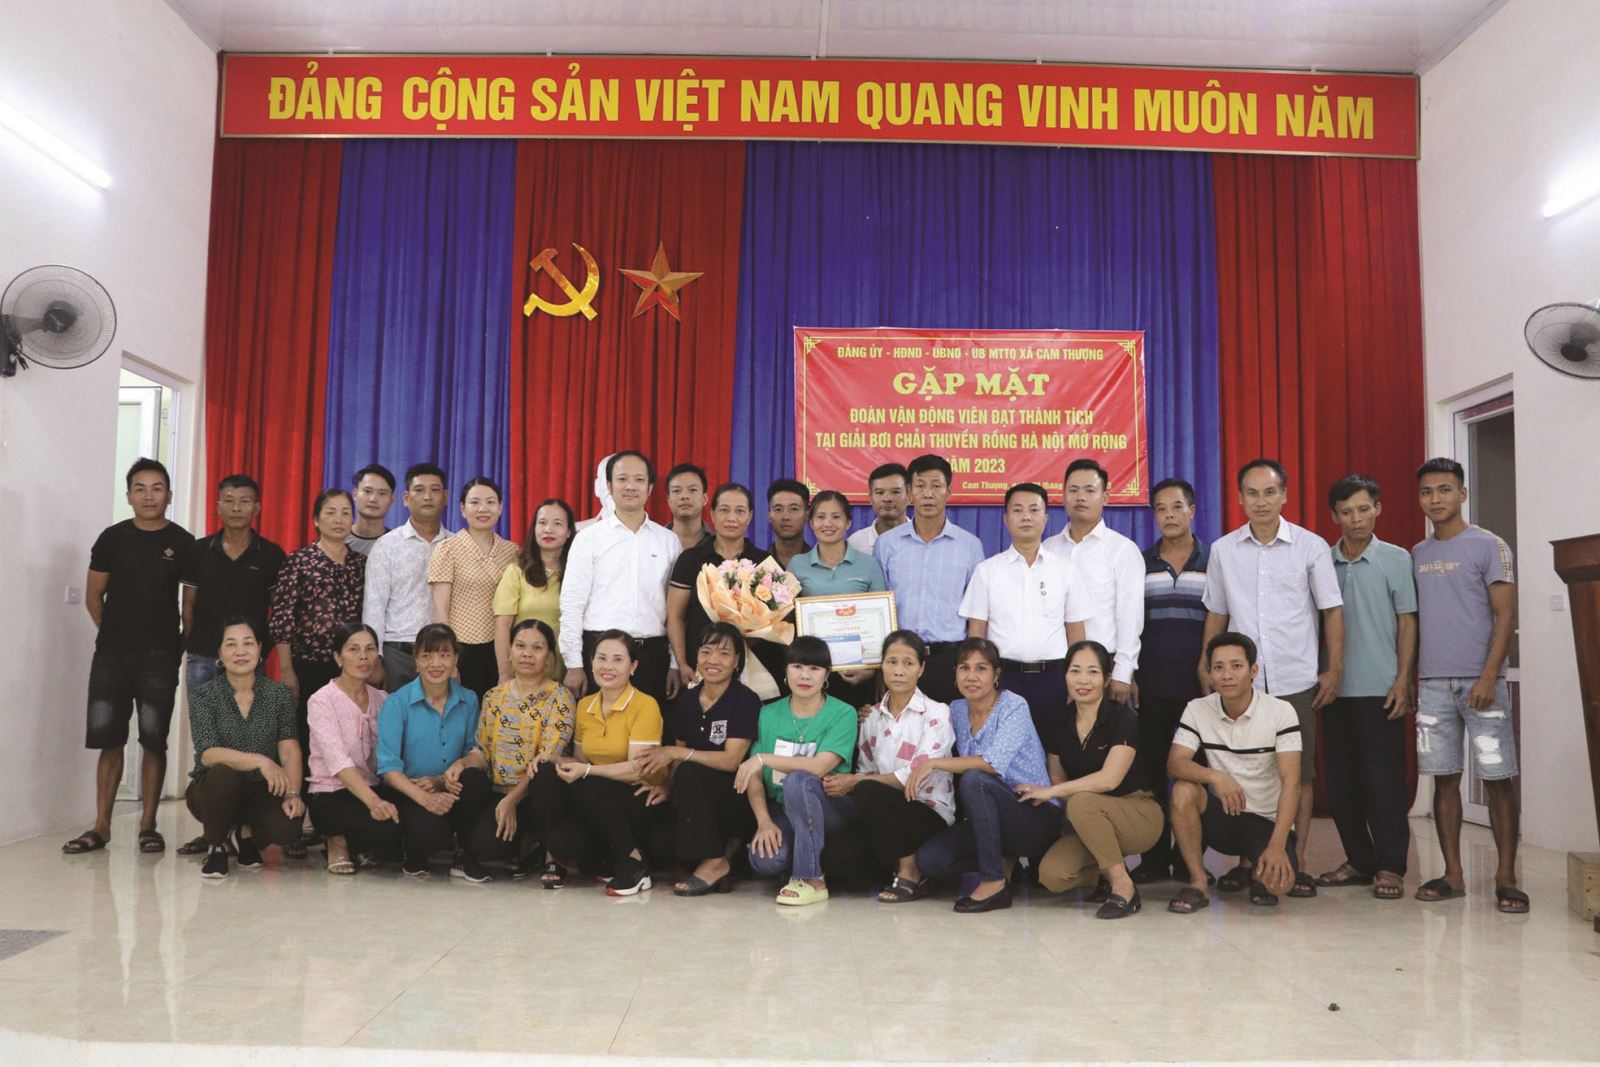 Hà Nội: Phát huy môn bơi thuyền chải truyền thống ở Thịnh Thôn